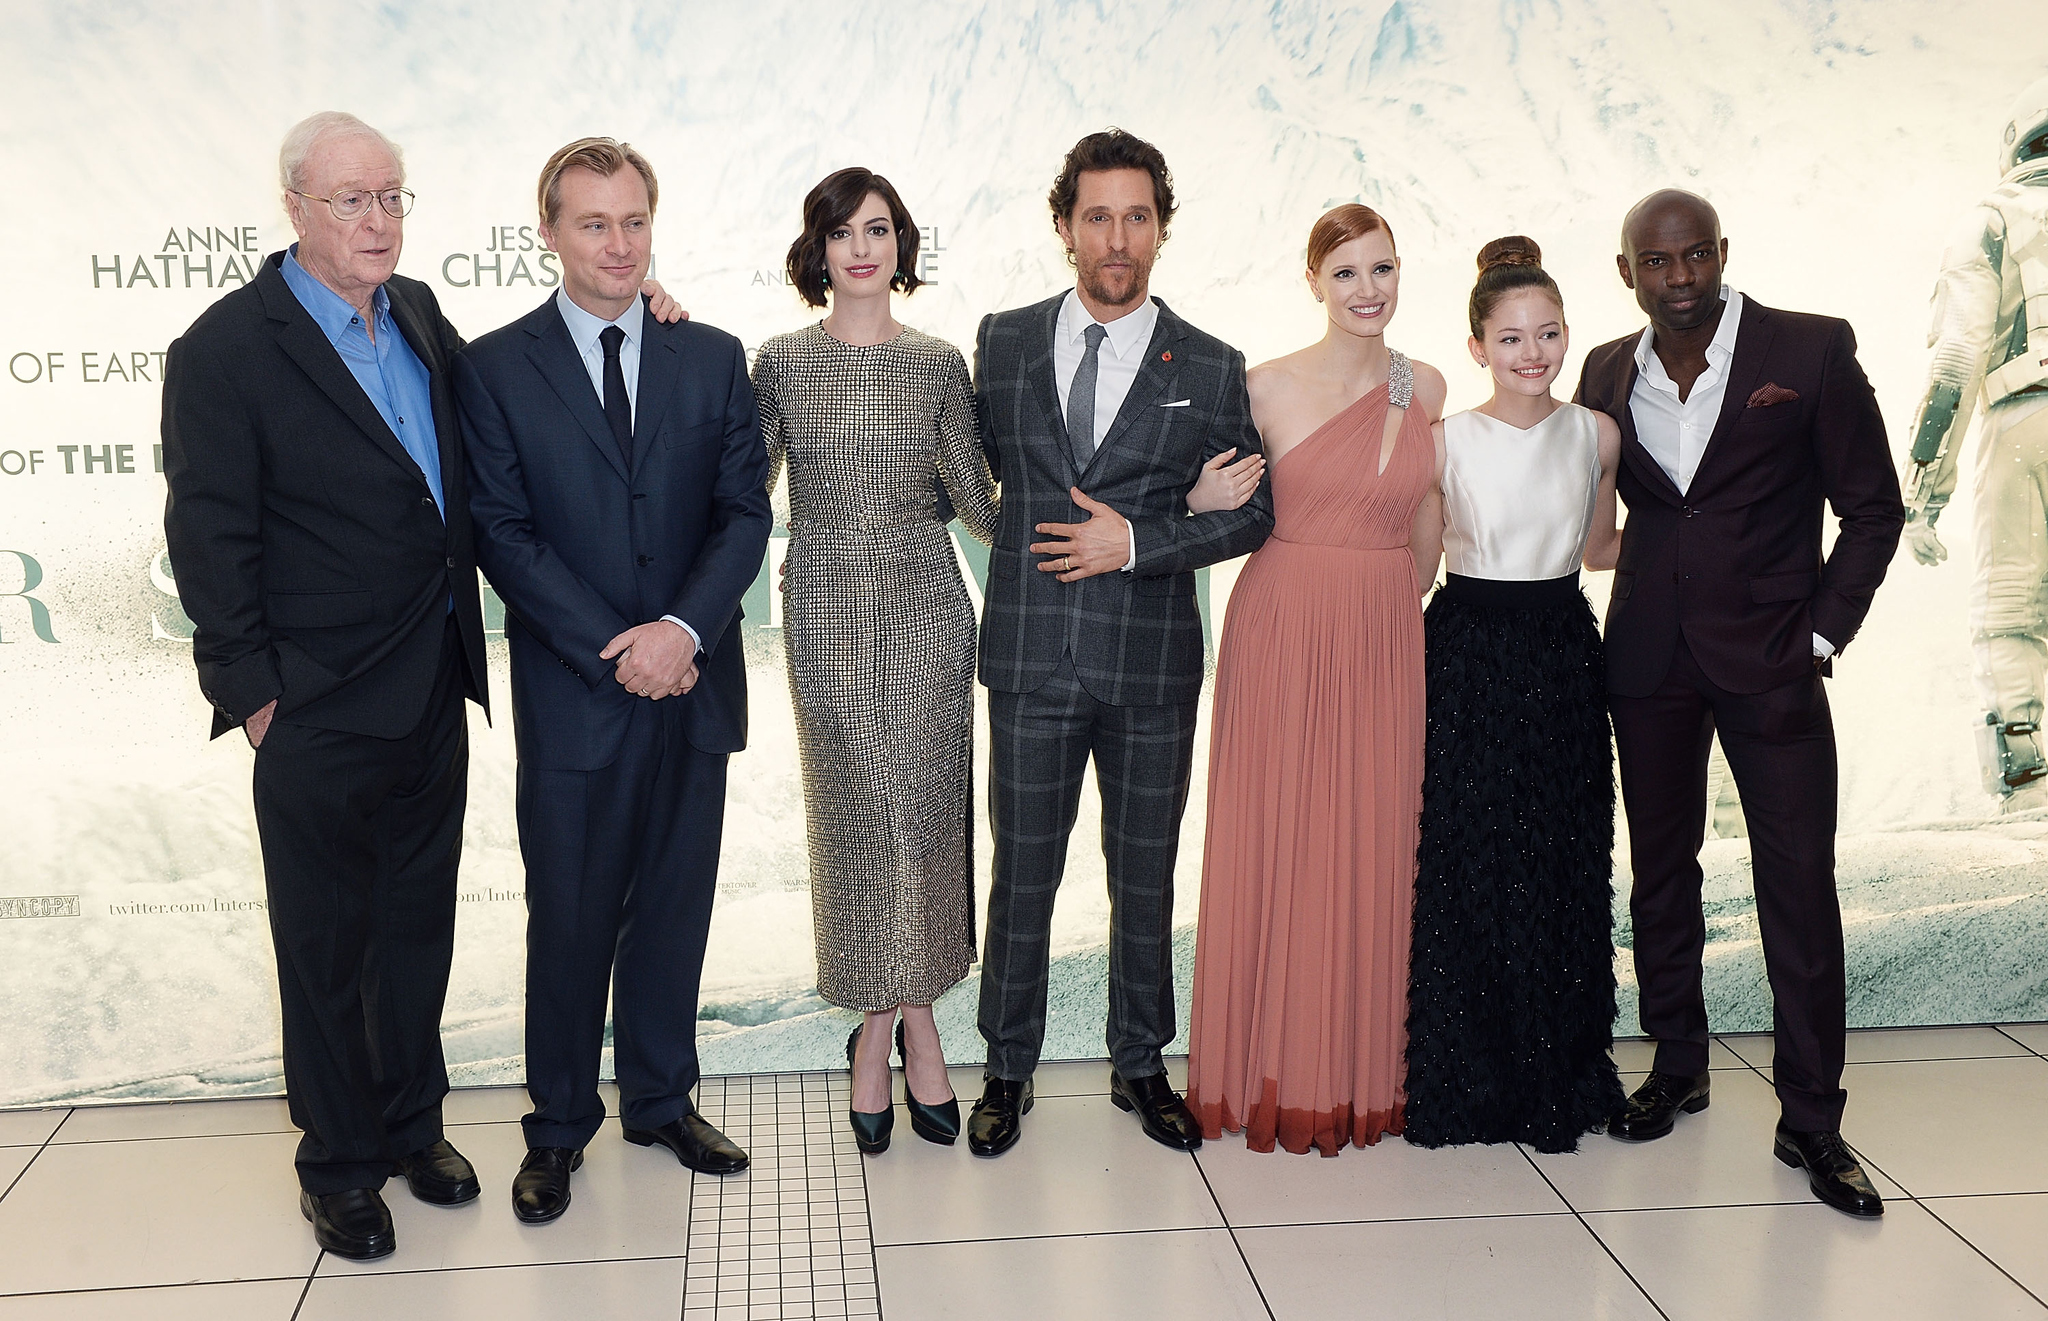 Matthew McConaughey, Michael Caine, Anne Hathaway, Christopher Nolan, David Gyasi, Jessica Chastain and Mackenzie Foy at event of Tarp zvaigzdziu (2014)